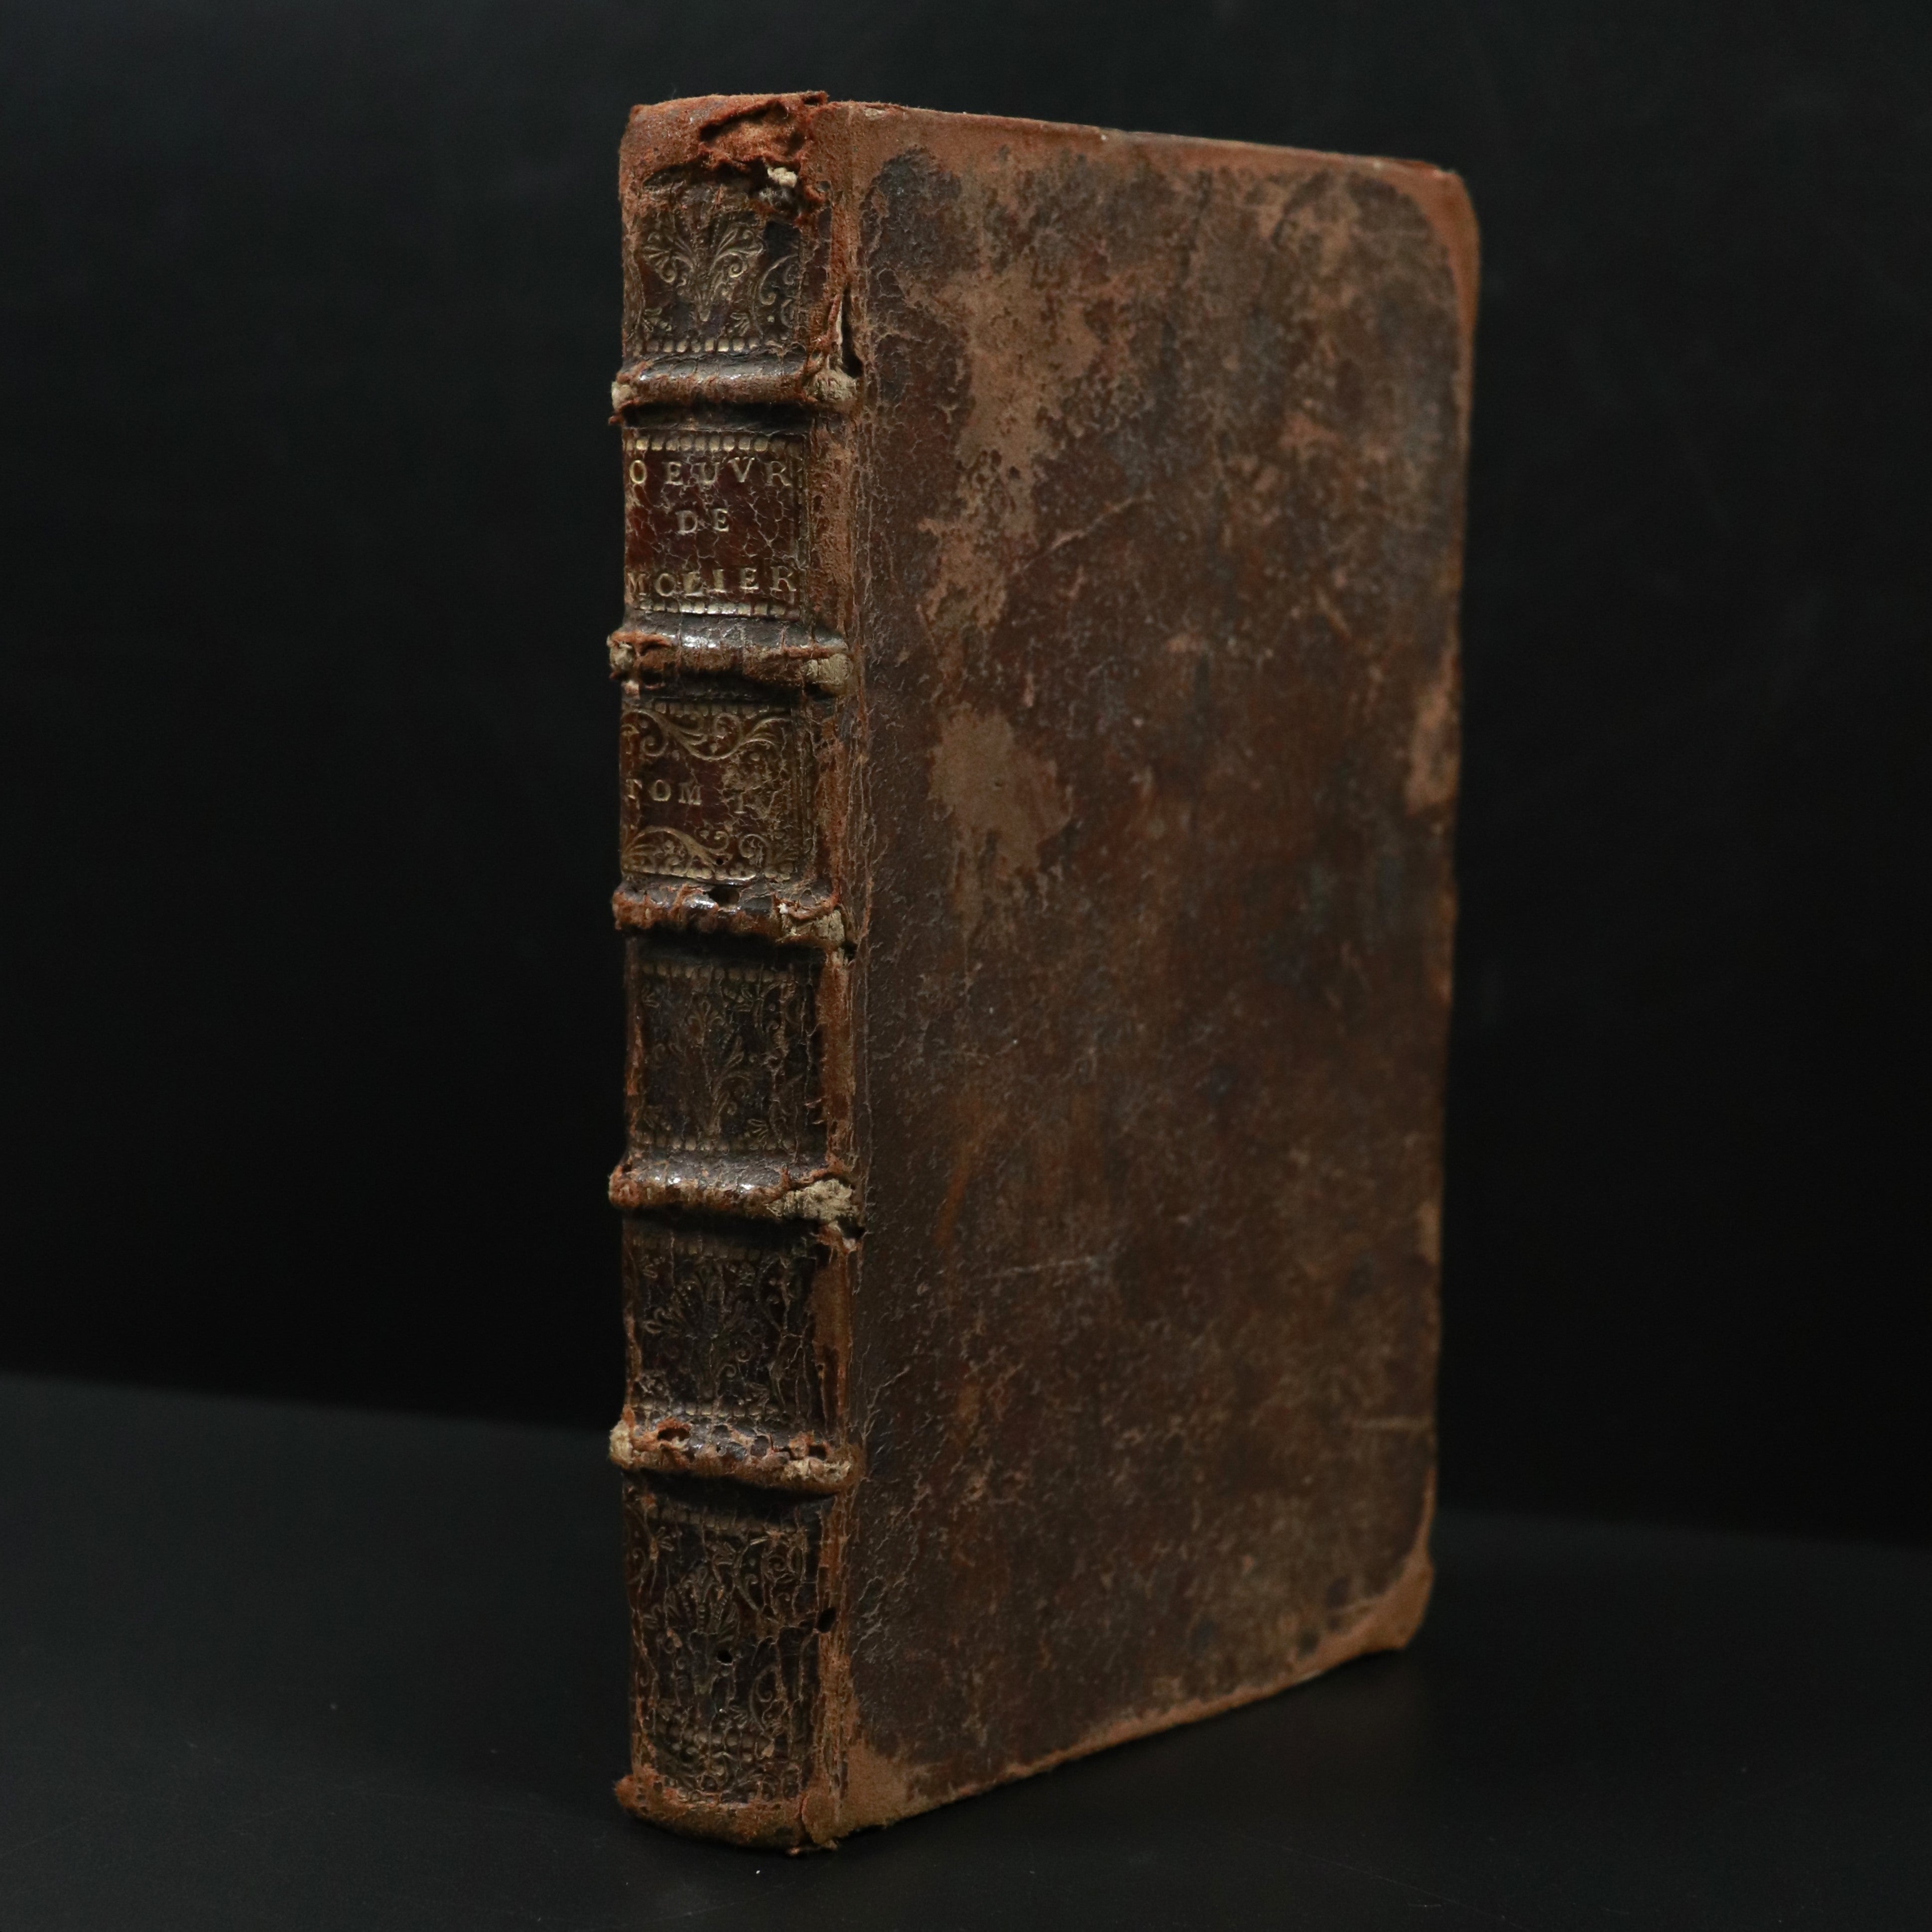 1730 Les Ouvres De Monsieur De Moliere Antiquarian French Literature Book